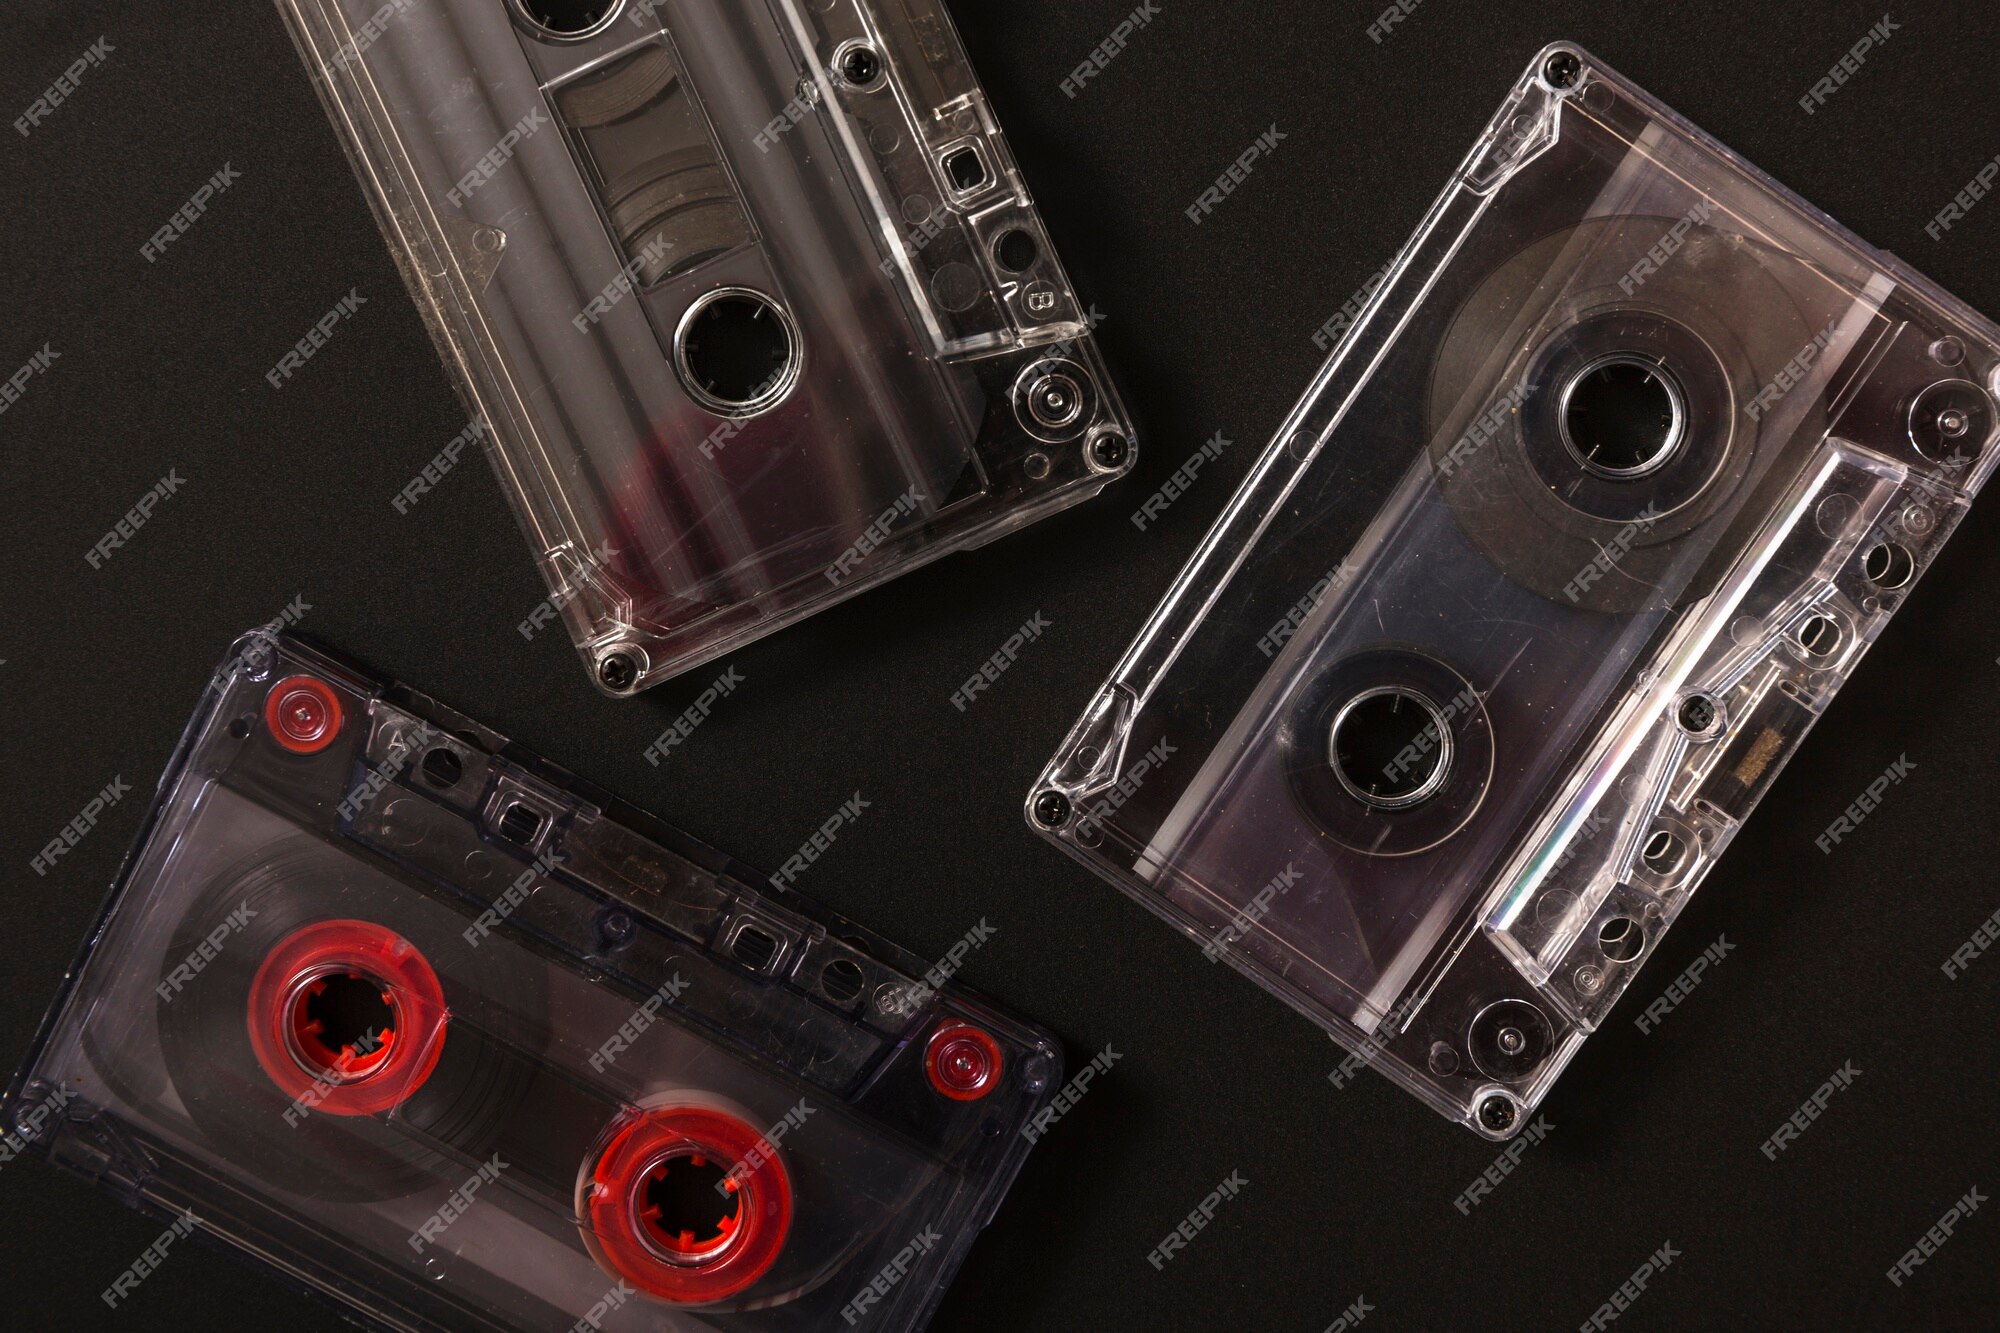 Cassette tape Images | Free Vectors, Stock Photos & PSD